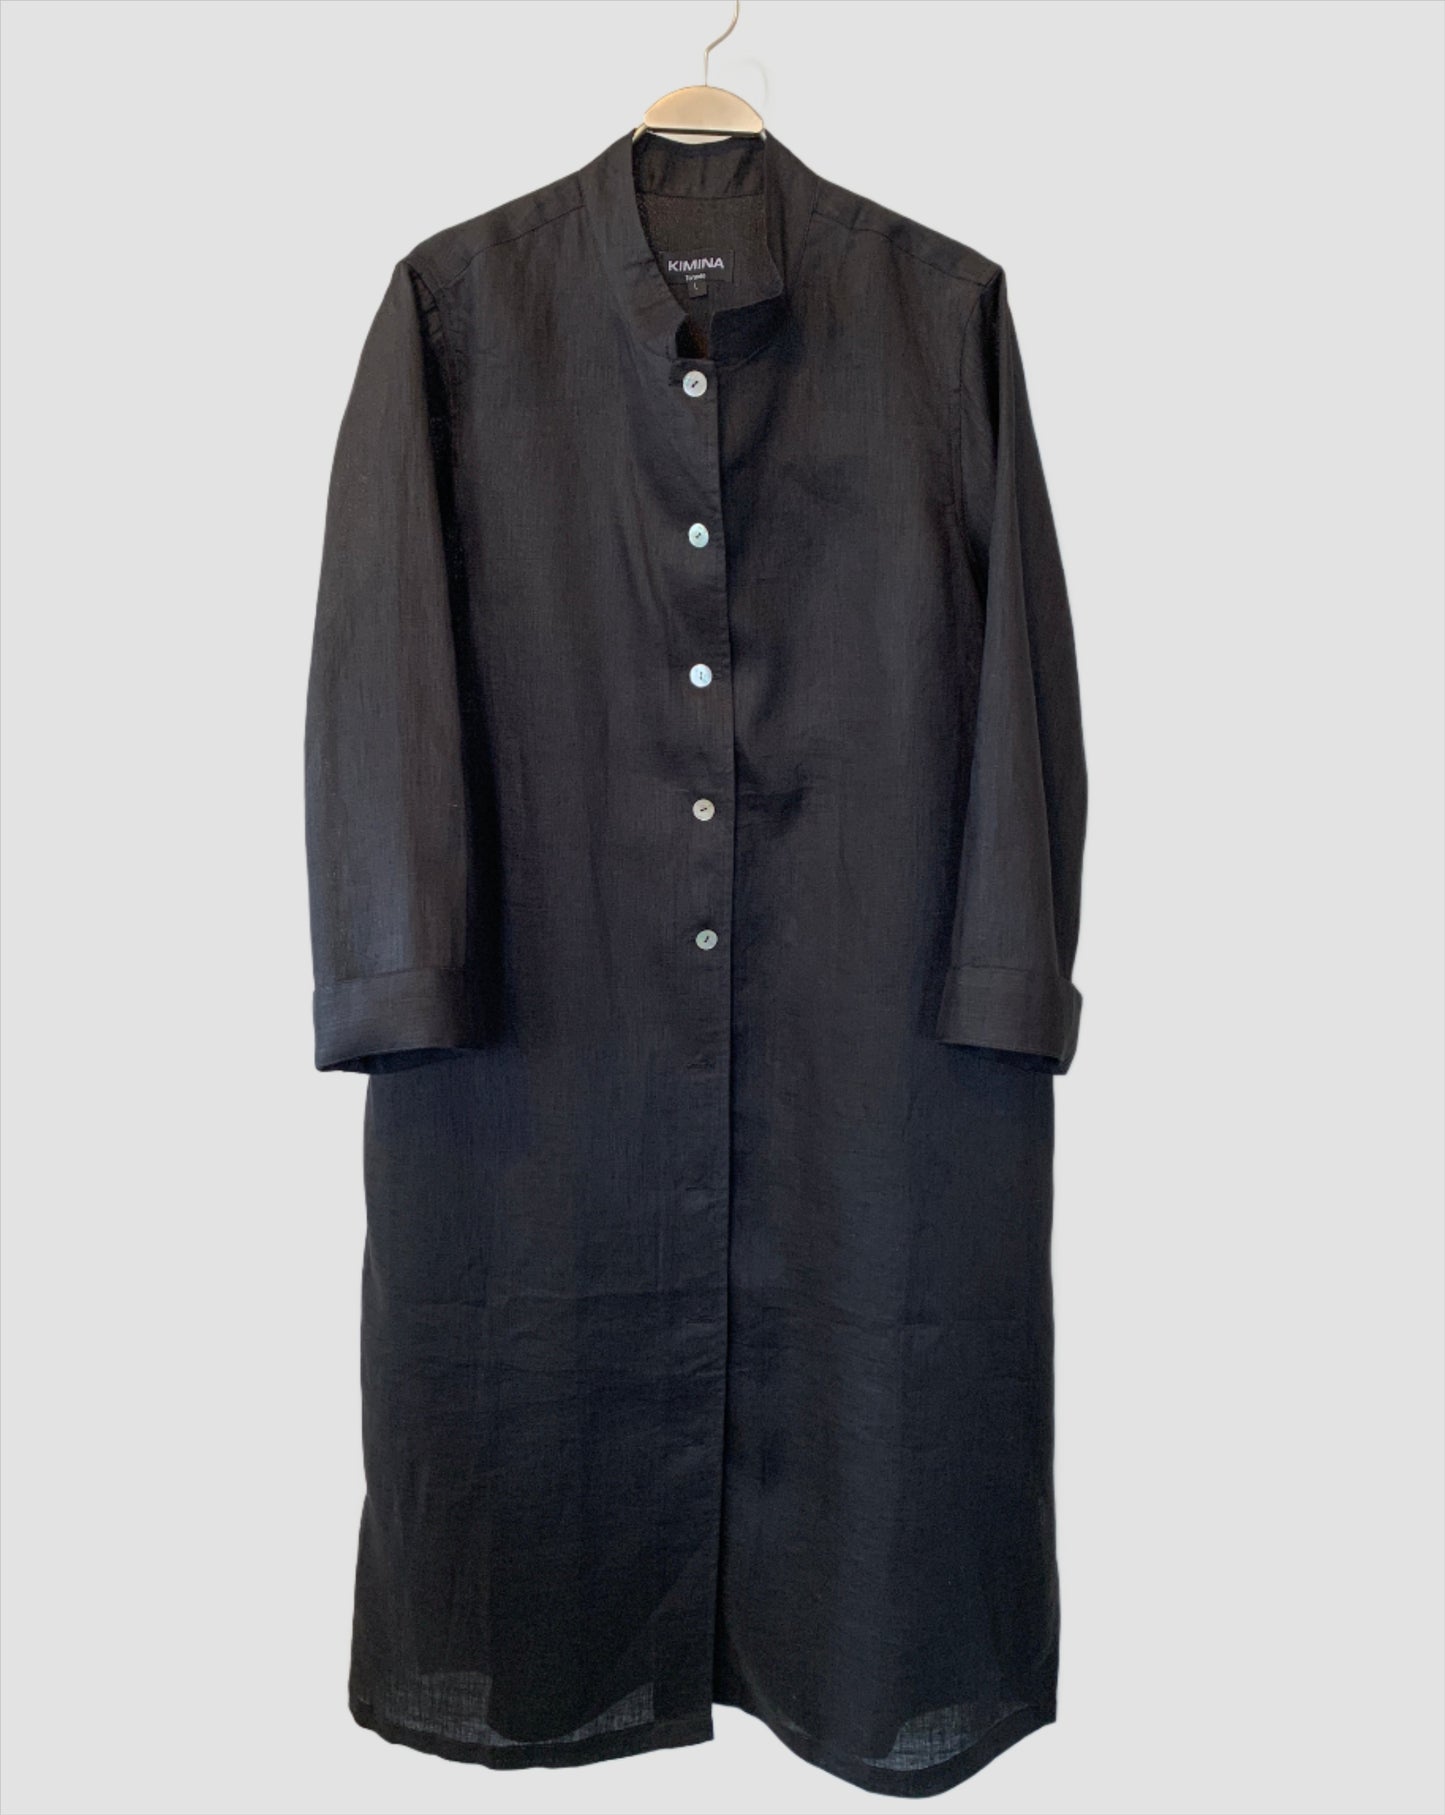 Linen Shirt Dress (Black)